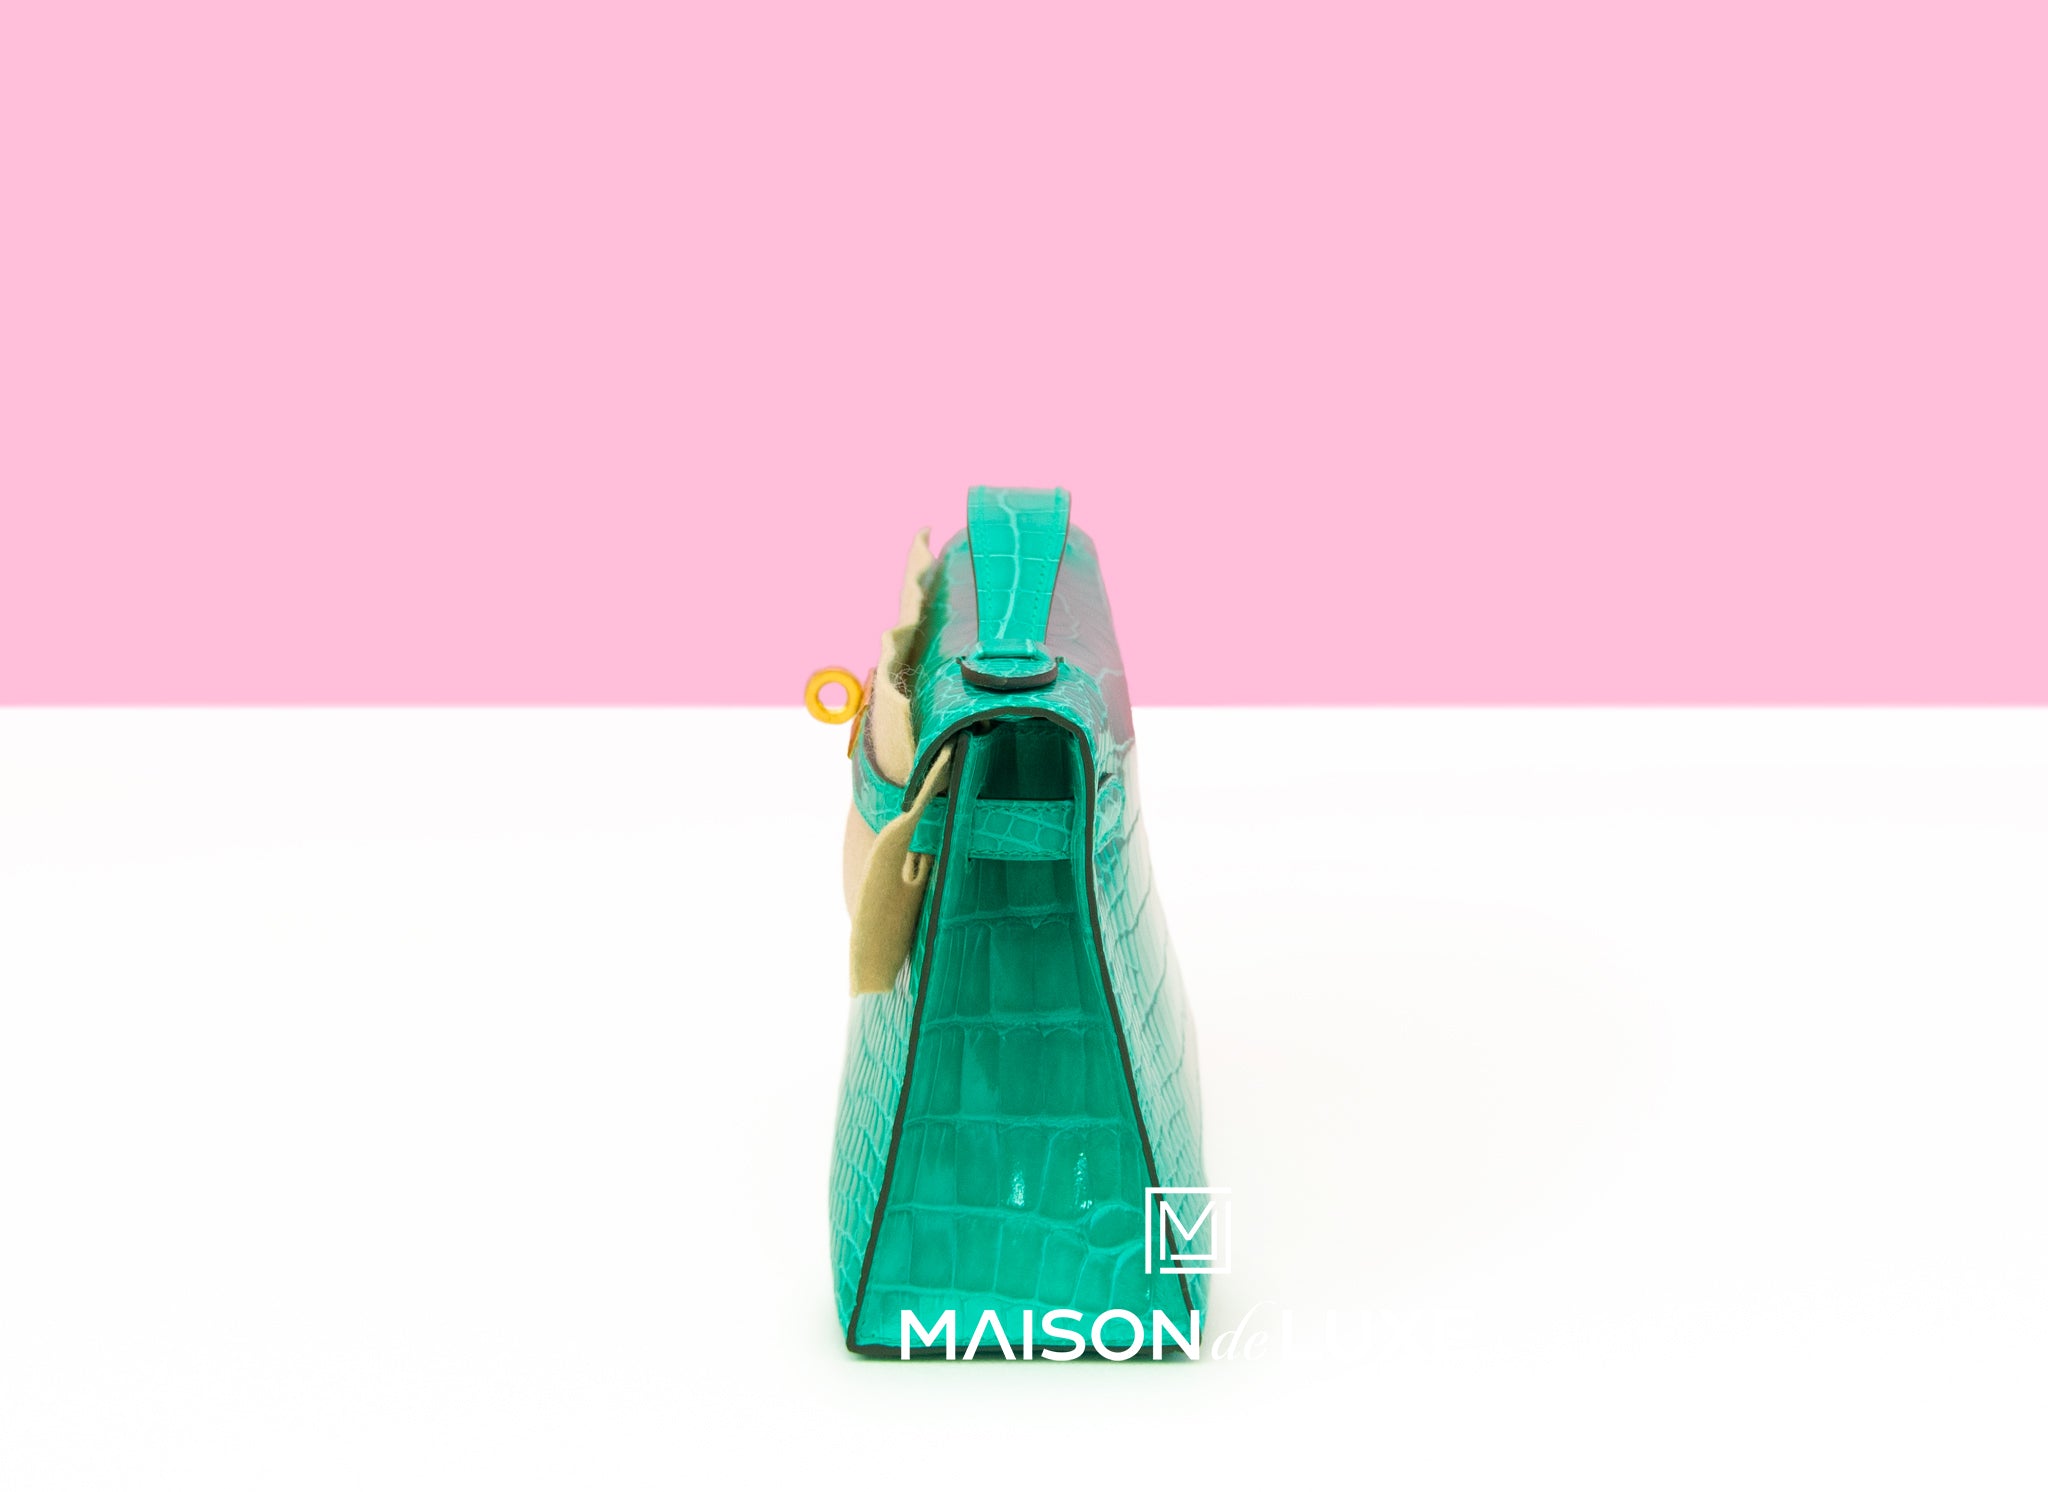 Luxury Maison Ltd. - New 6O vert jade shiny Croc Kelly pochette ghw  #kellypochette #vertjade